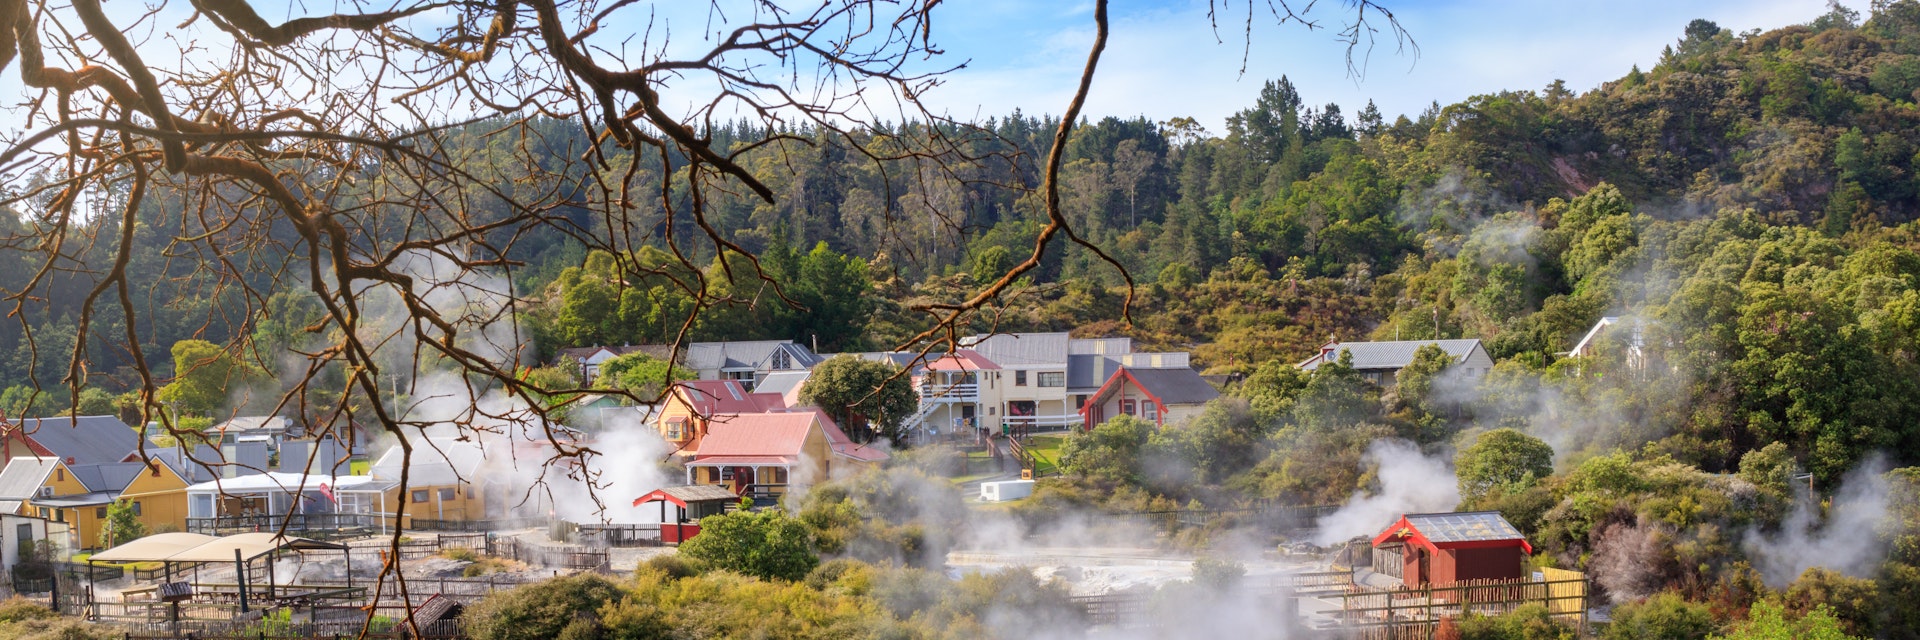 Maori thermal village Whakarewarewa, Rotorua, New Zealand.